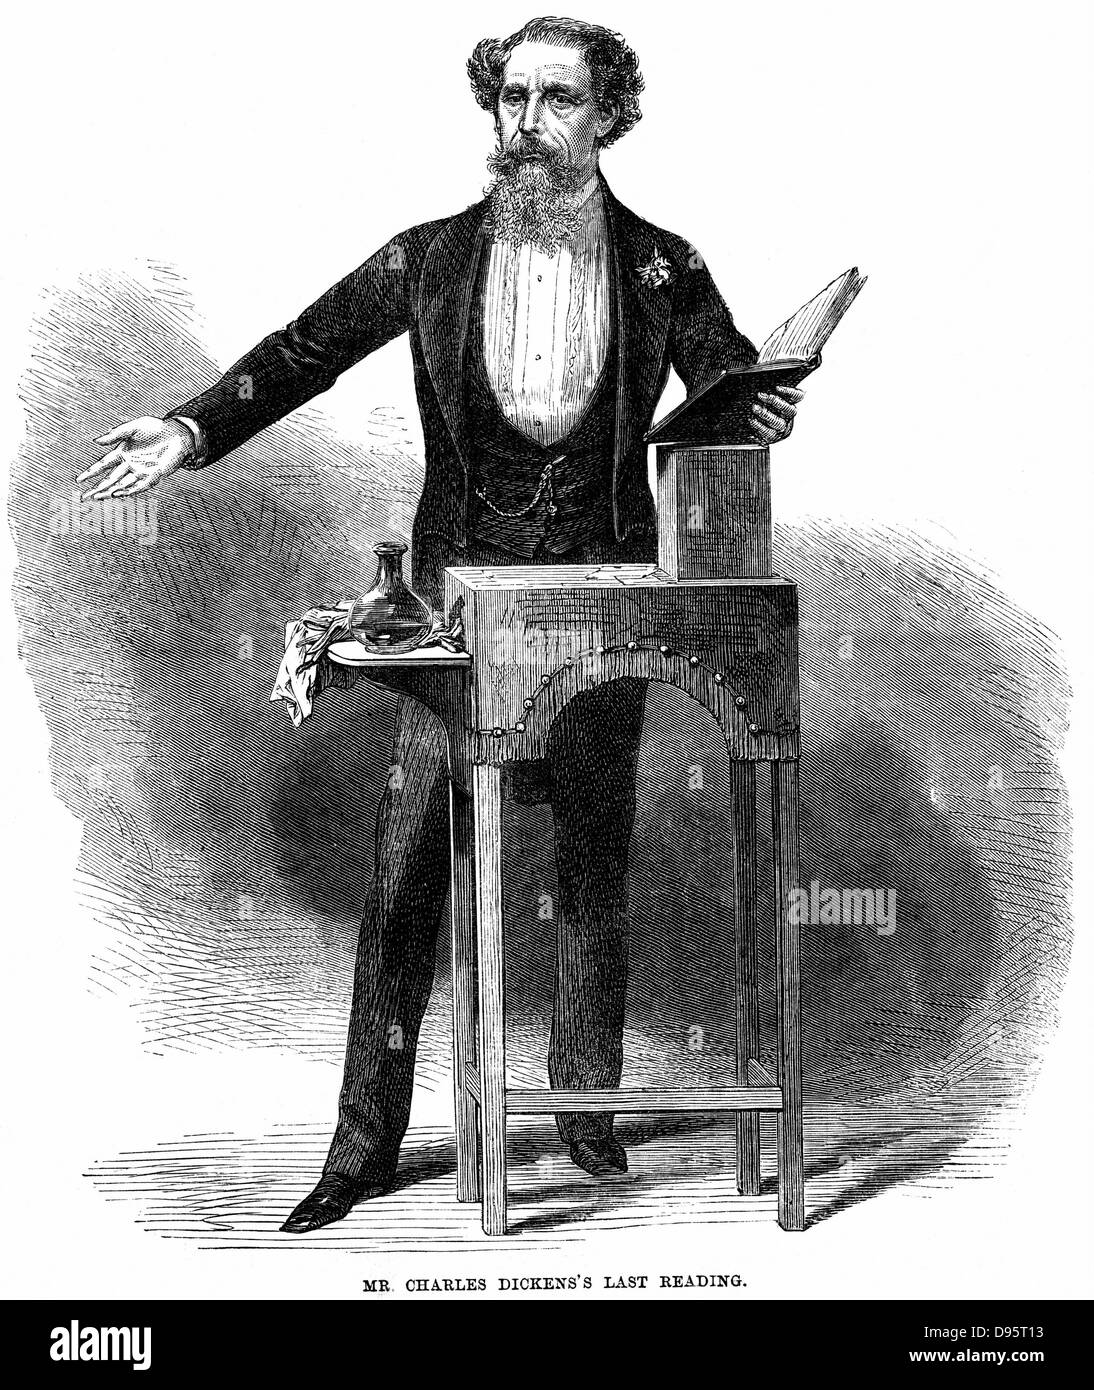 Charles Dickens (1812-70) dando la sua ultima lettura pubblica a St James's Hall di Londra il 5 marzo 1870. Egli ha letto gli estratti da "A Christmas Carol" e la scena di prova da "Pickwick Papers". La sua prima lettura era nel 1858. Incisione su legno 1870. Foto Stock